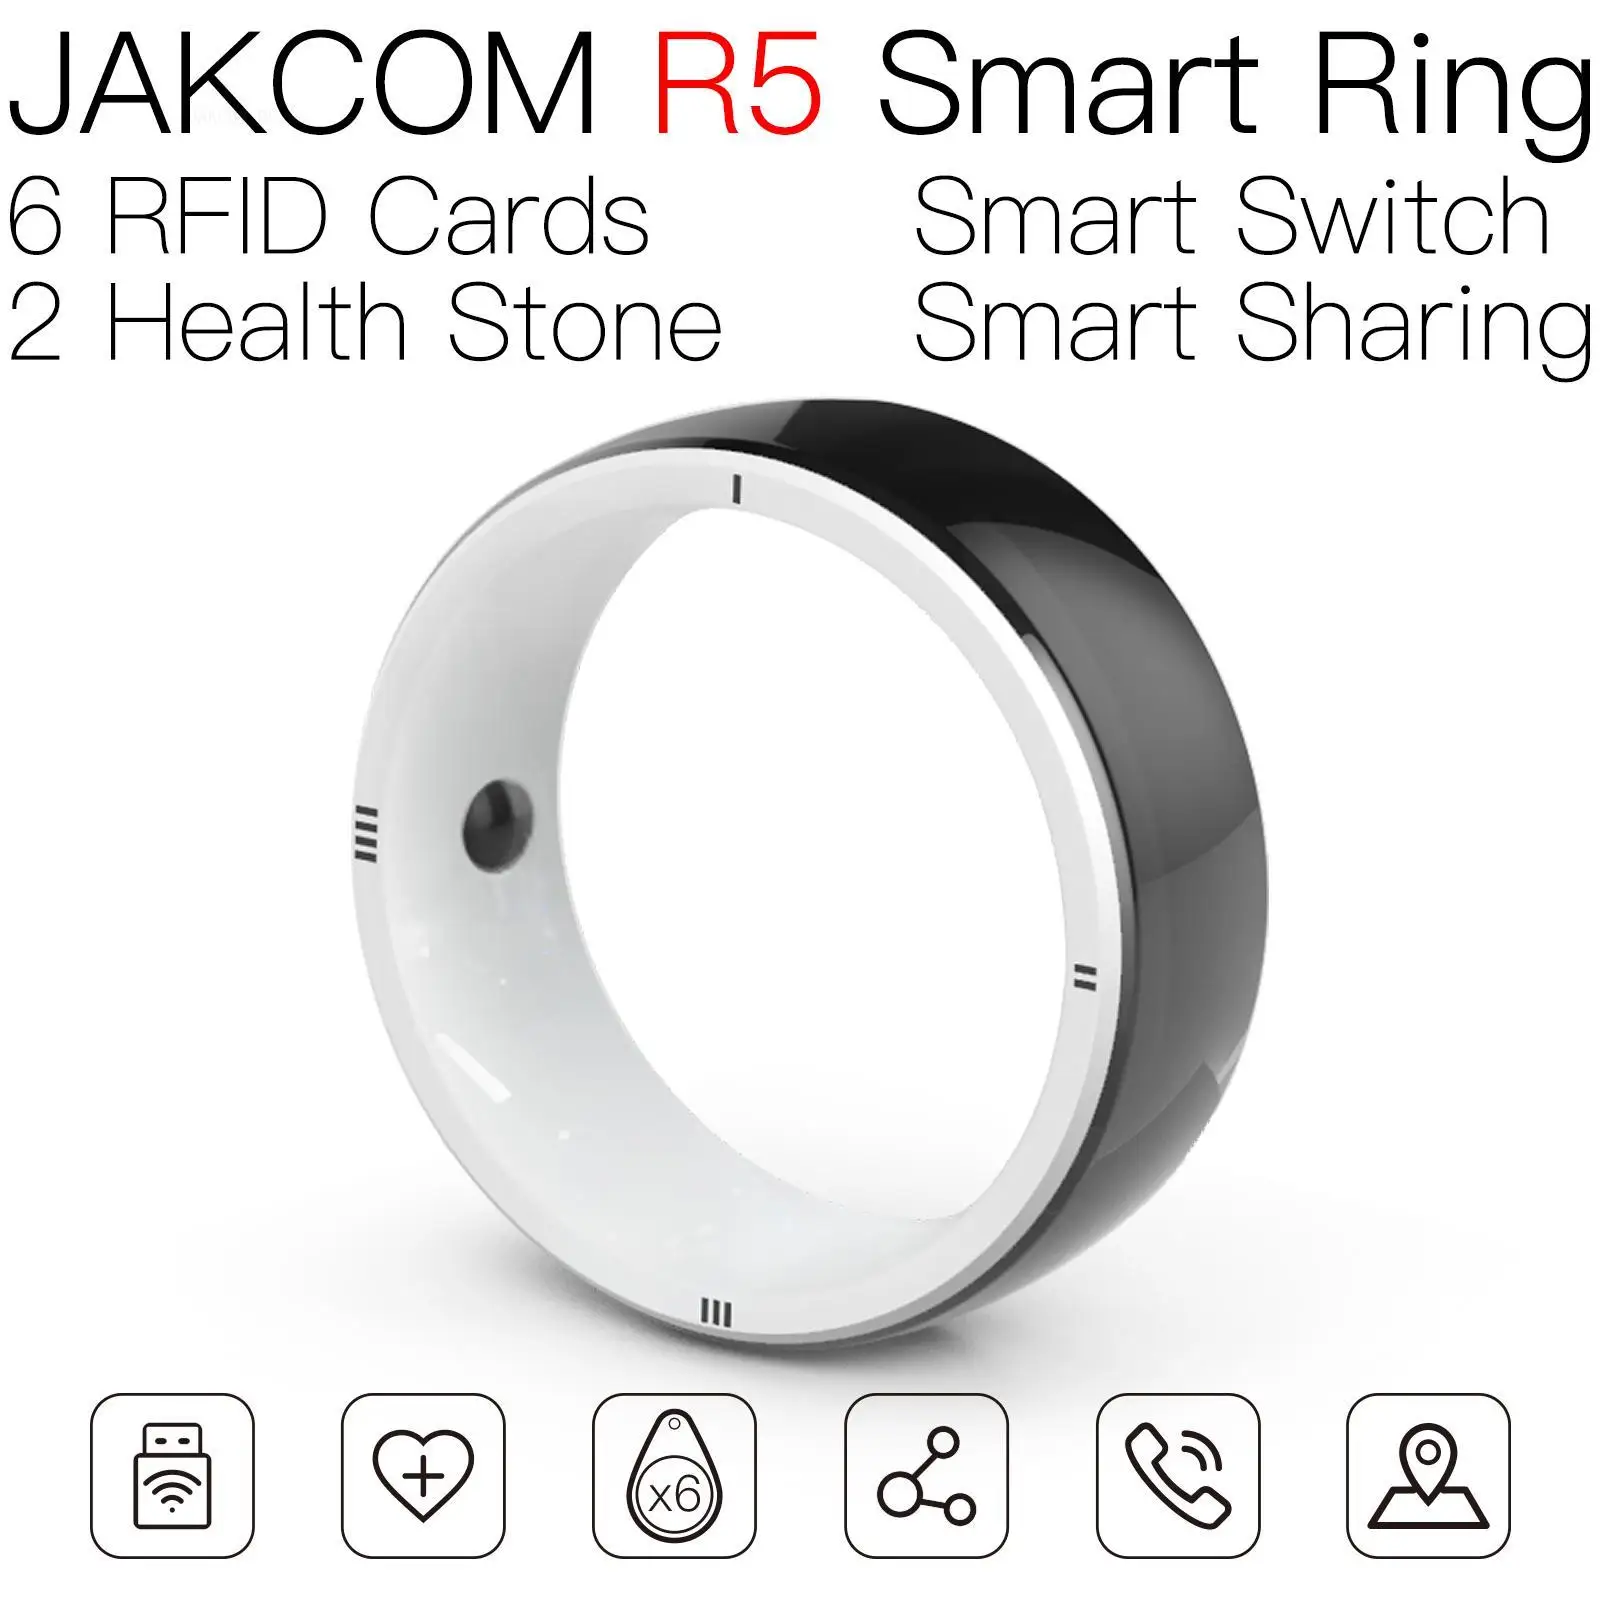 

Умное кольцо JAKCOM R5, лучший подарок с мини-принтером, a6 peripage firewire card, carte ammibo rfid, наклейка в виде кошки